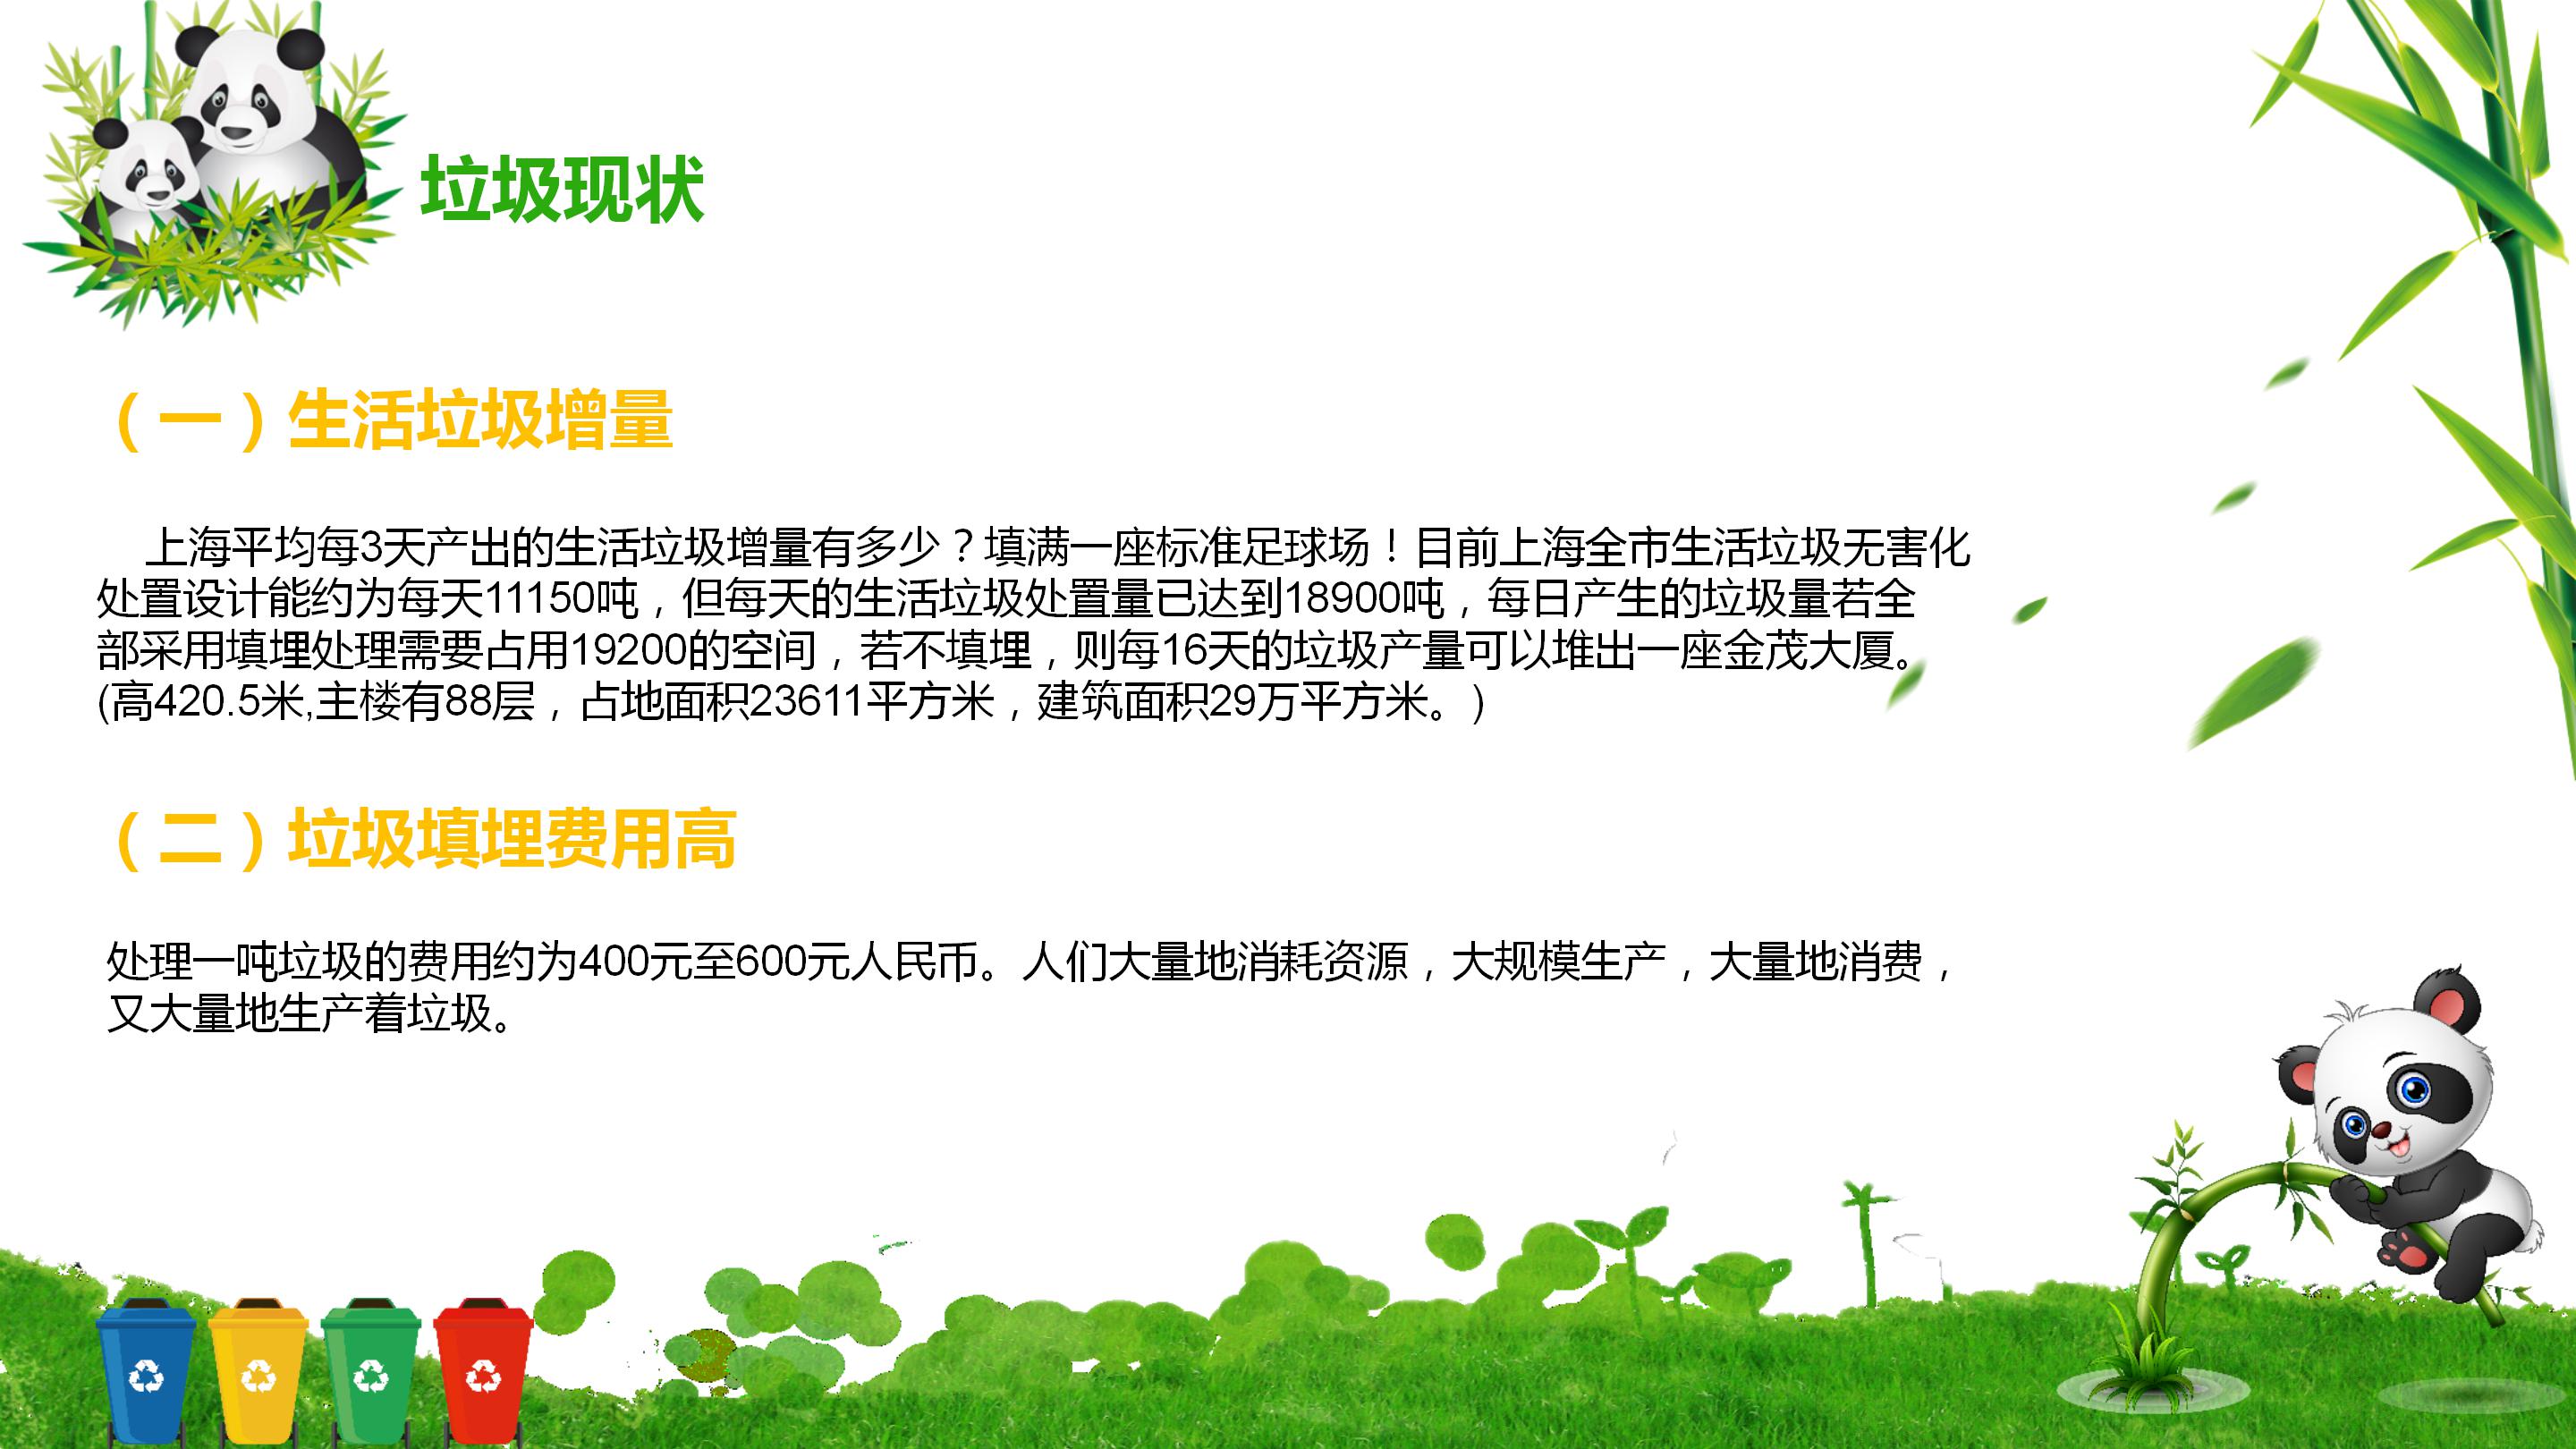 卡通大熊猫环境保护垃圾分类主题ppt模板